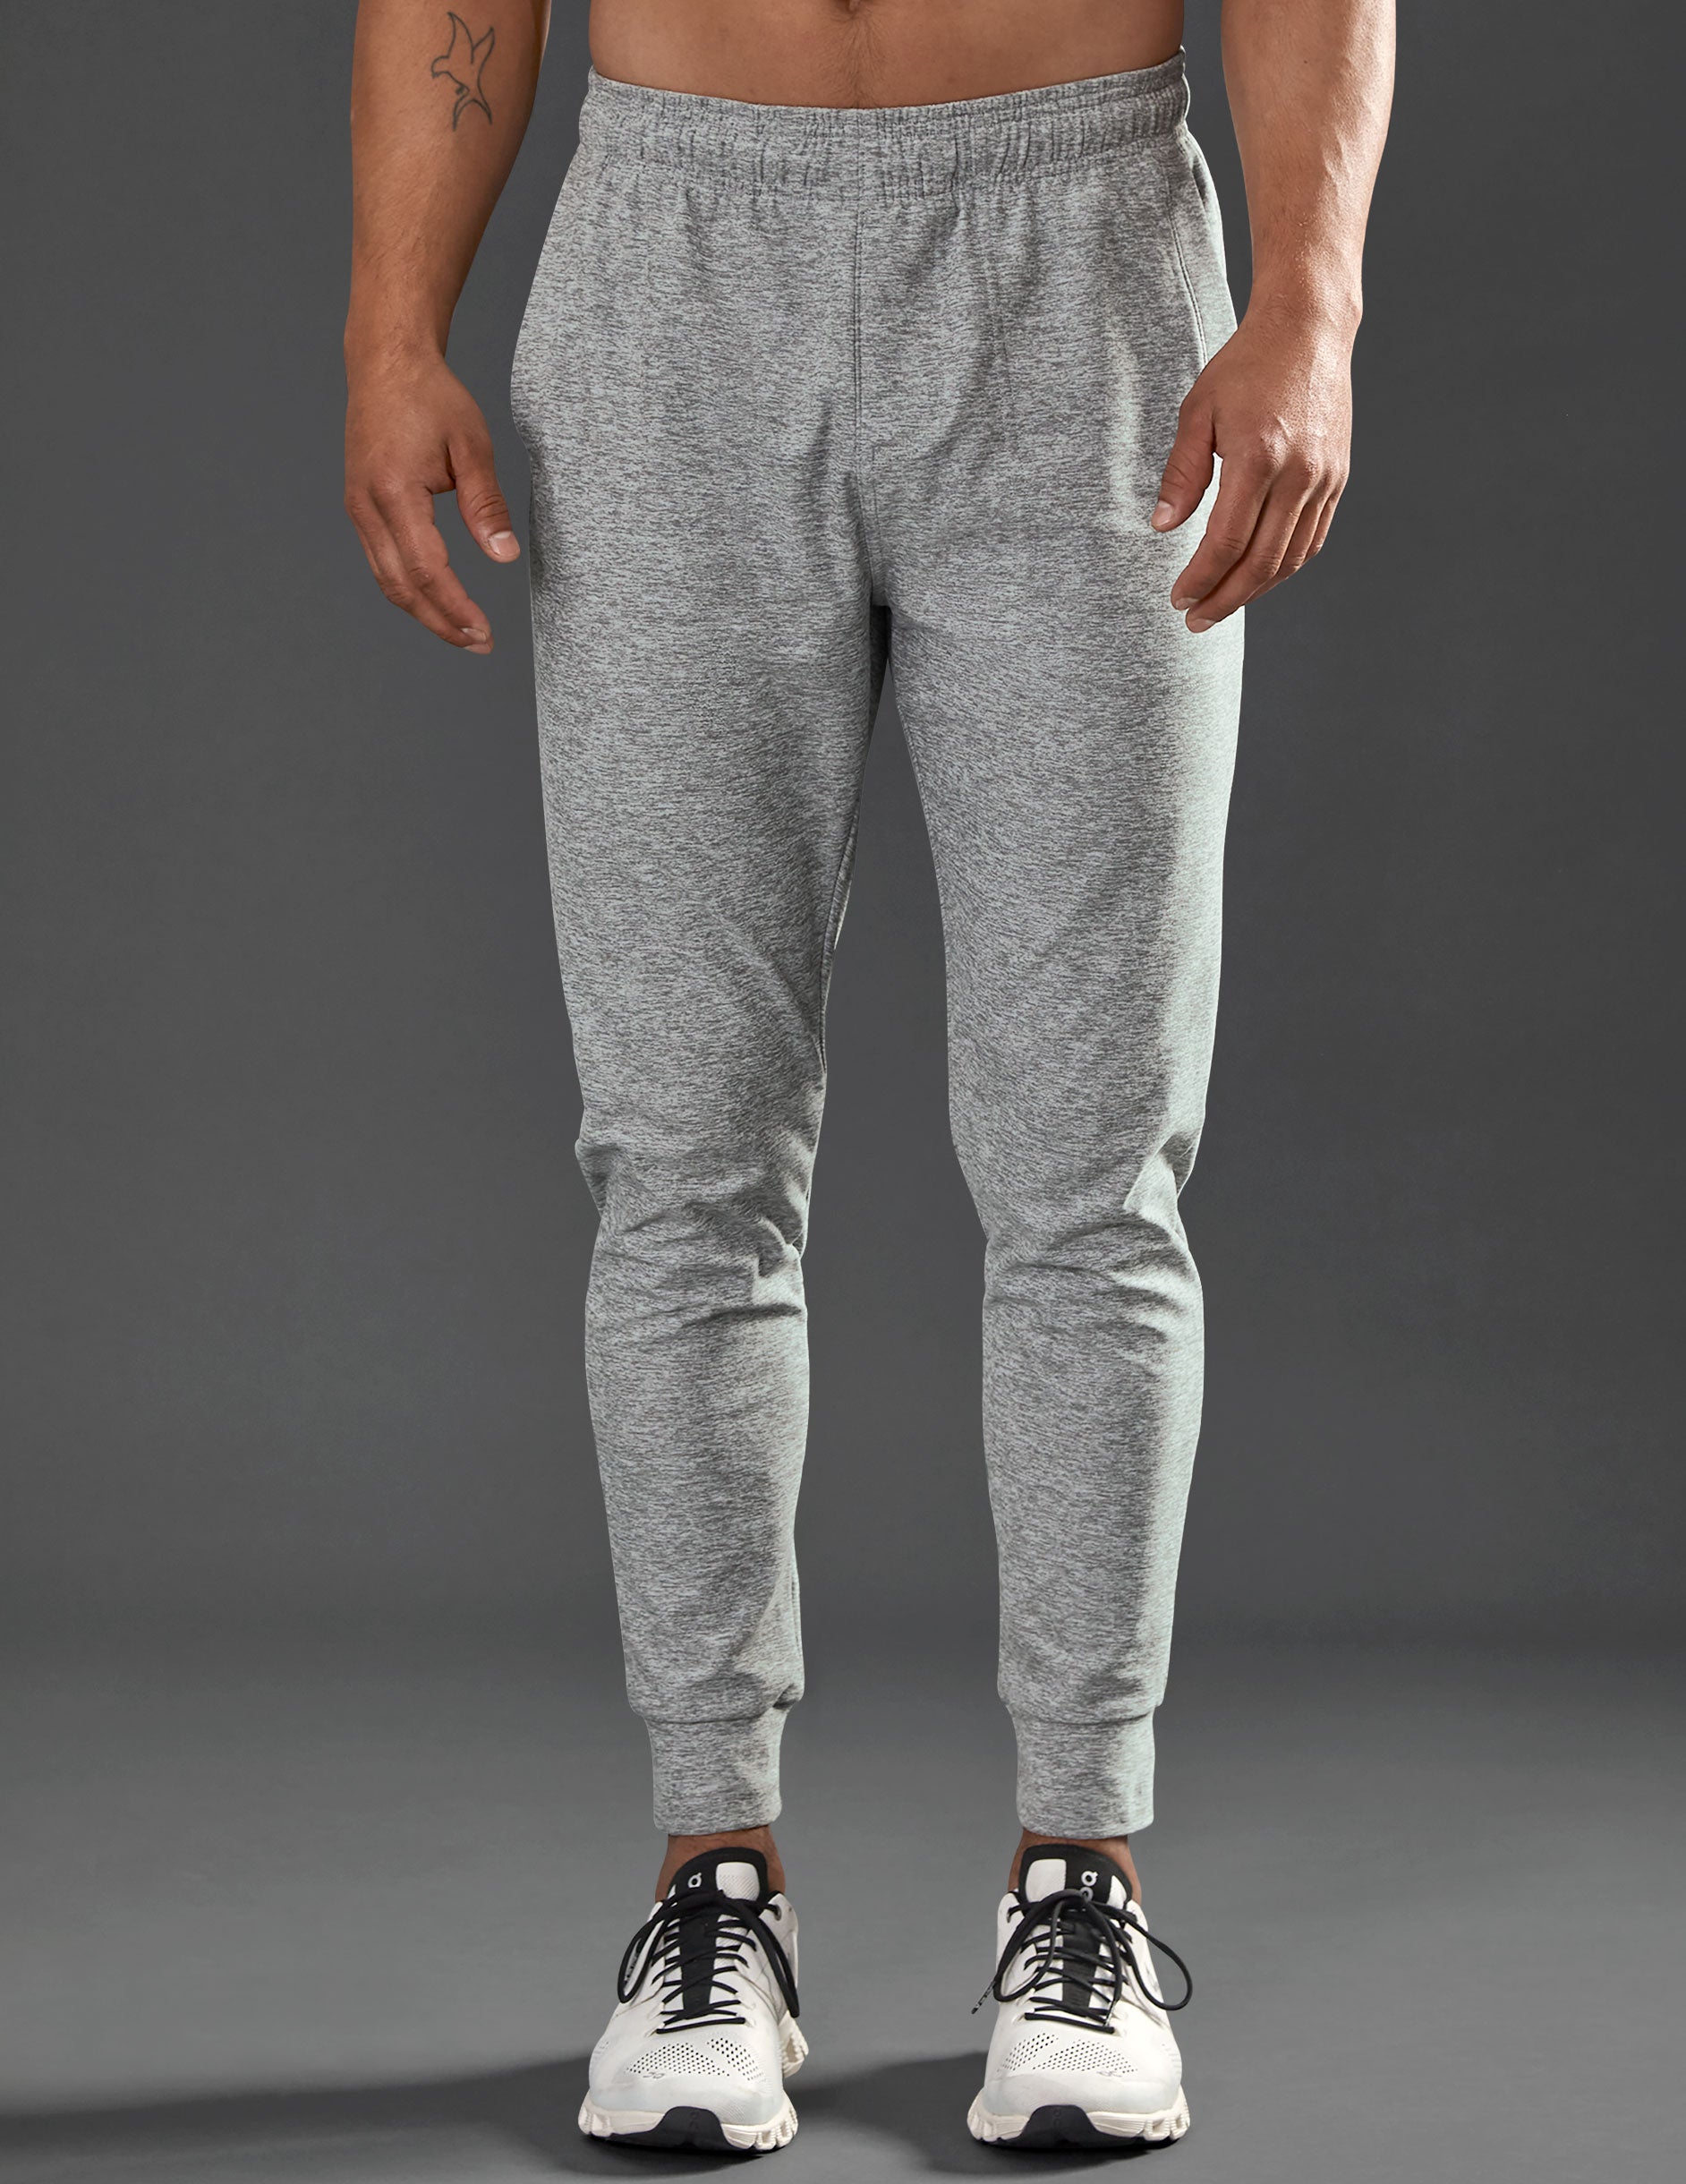 grey mens sweatpants with drawstring at waist